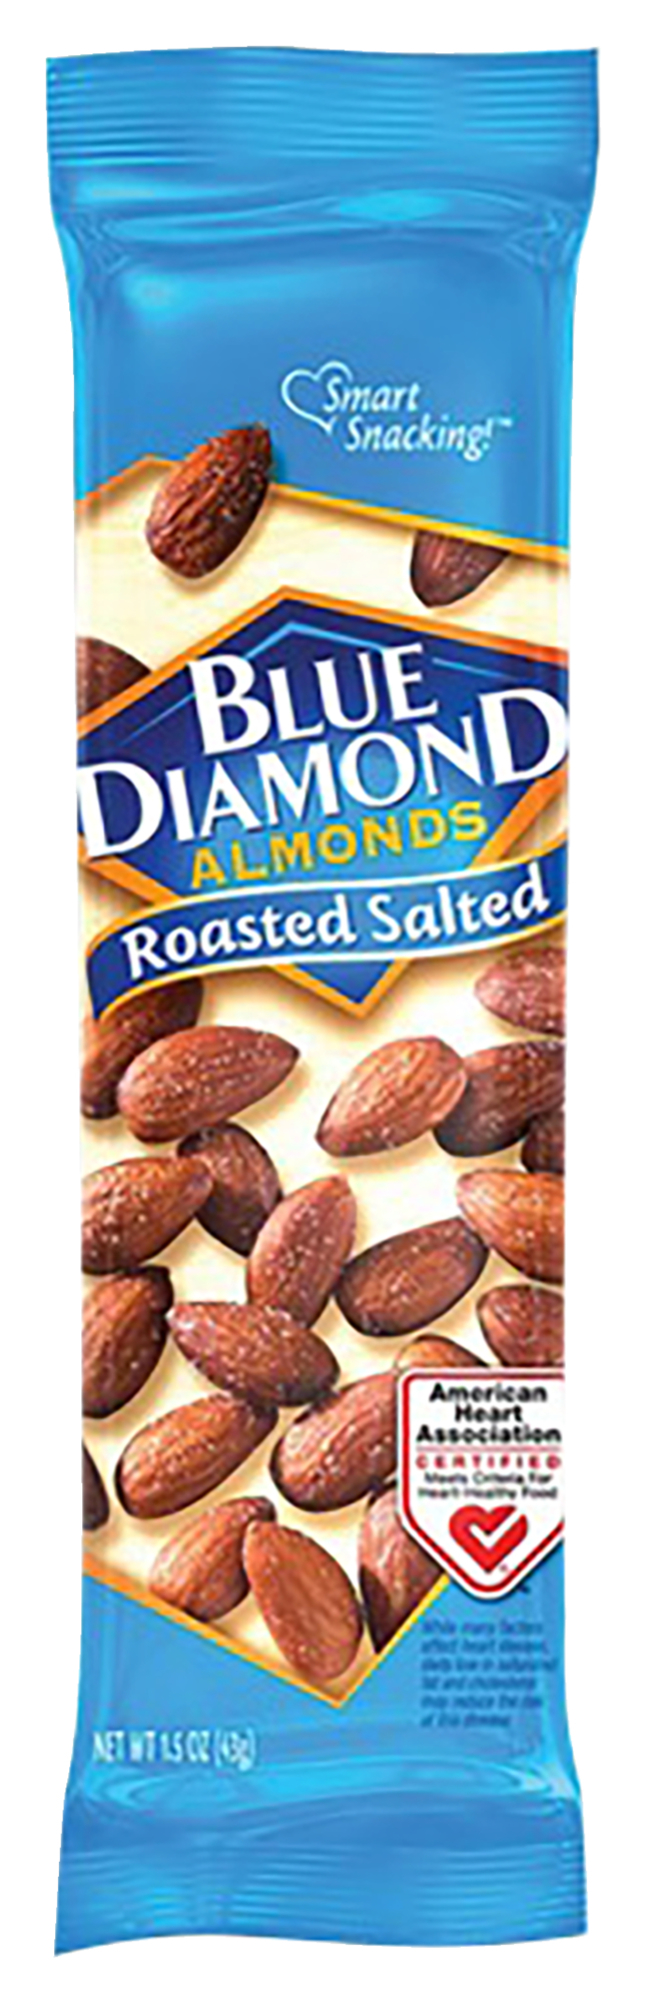 Blue Diamond Roasted Salted Almonds, Item Number 2049923